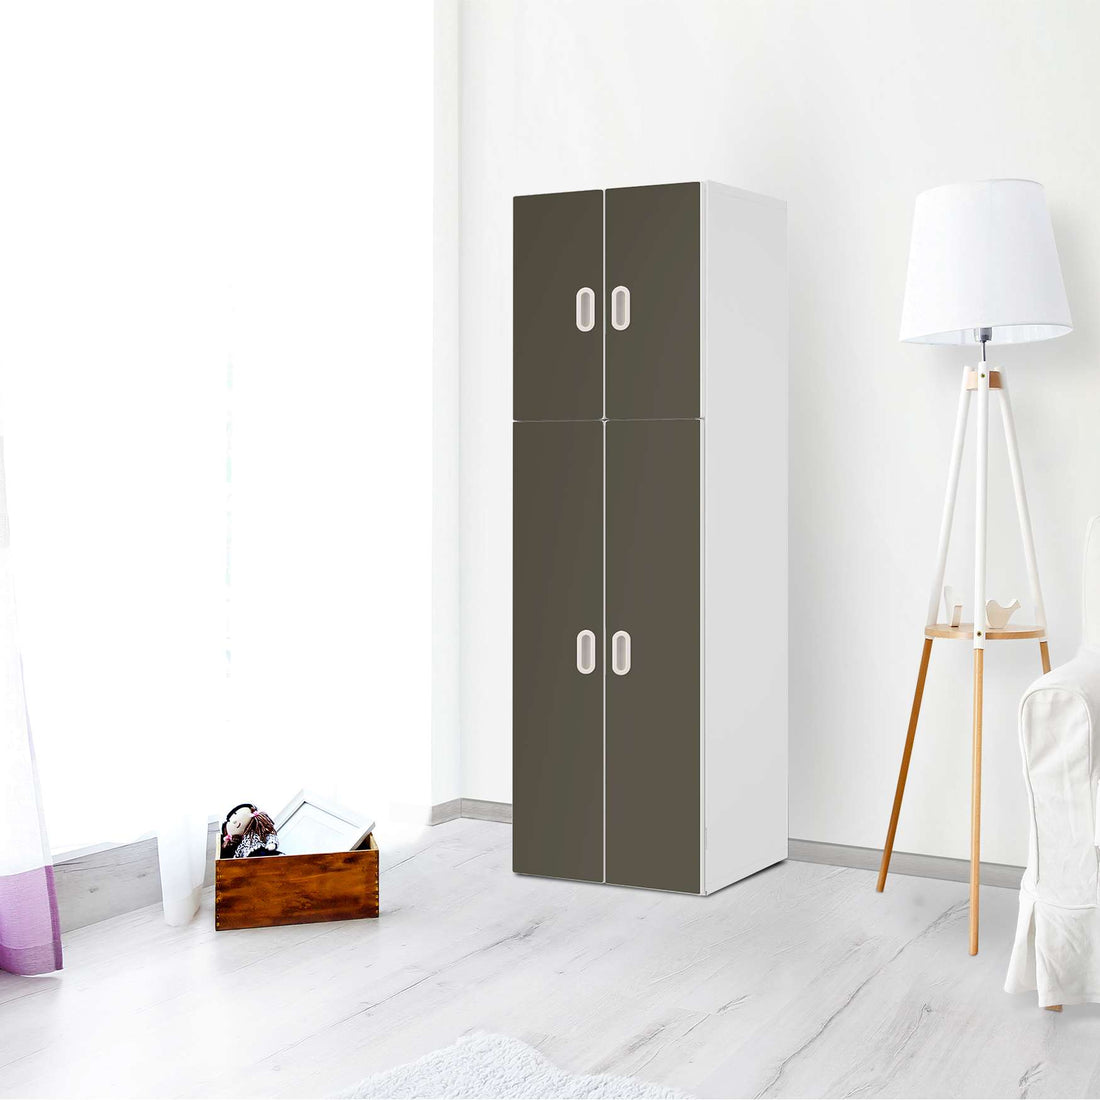 Selbstklebende Folie Braungrau Dark - IKEA Stuva / Fritids kombiniert - 2 große Türen und 2 kleine Türen - Kinderzimmer